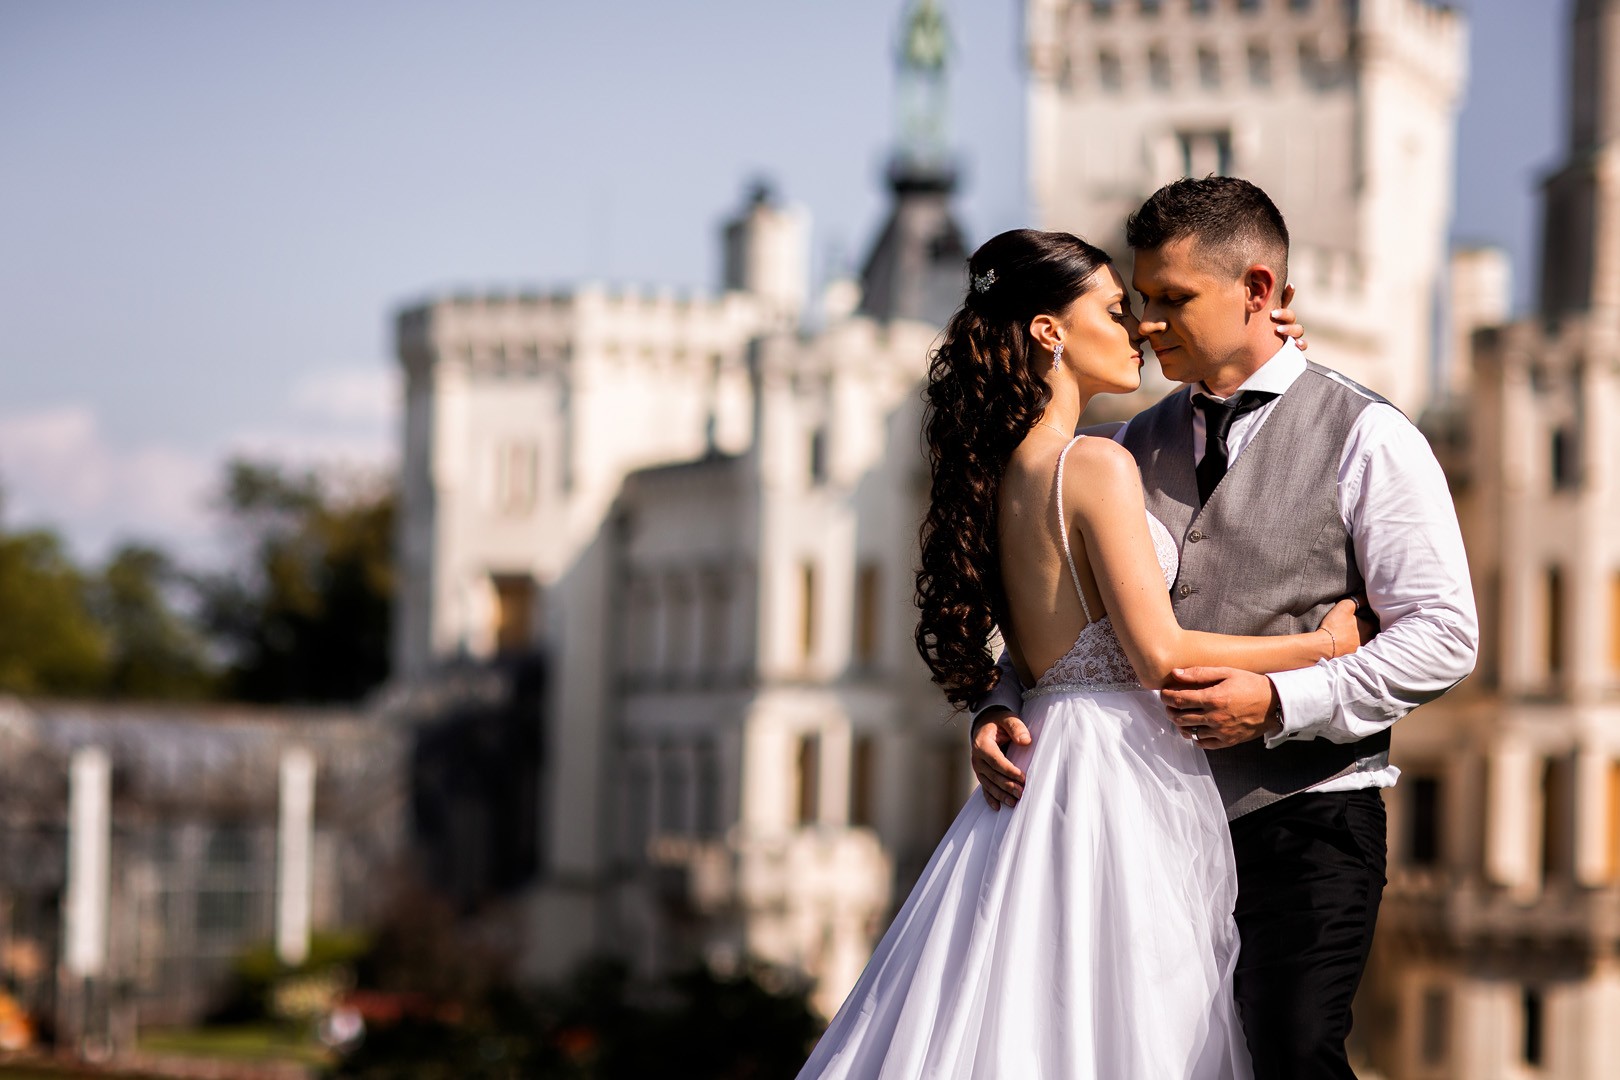 Picturesque dream wedding of Kloudy & Michal in Hluboká nad Vltavou. - 0388.jpg